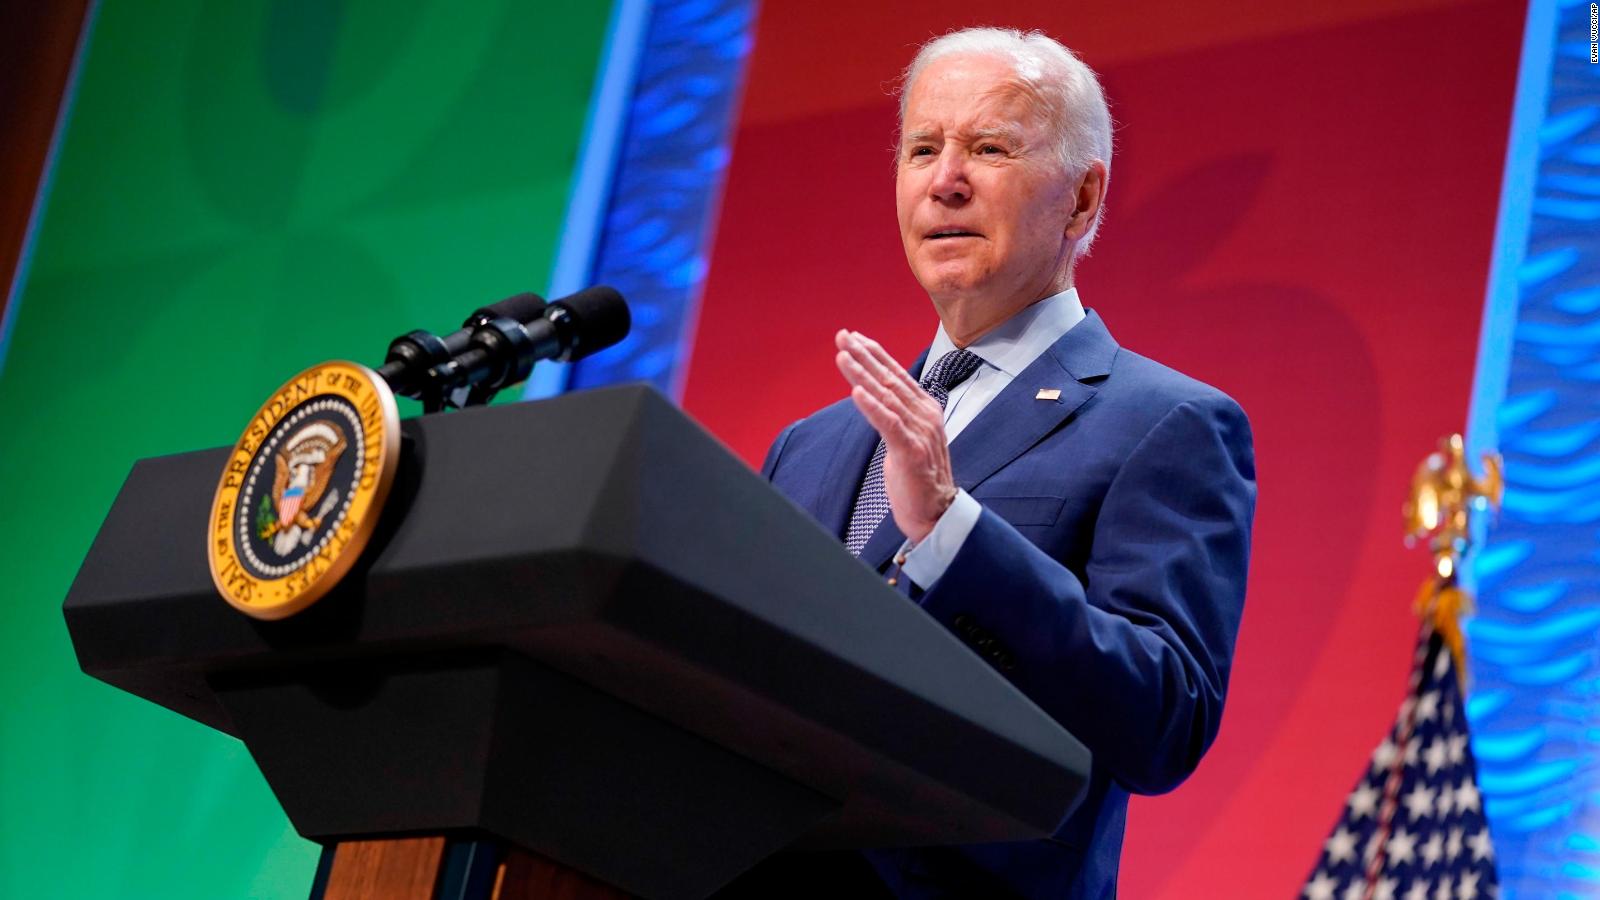 ANÁLISIS | El último error de Joe Biden cae como anillo al dedo para los republicanos